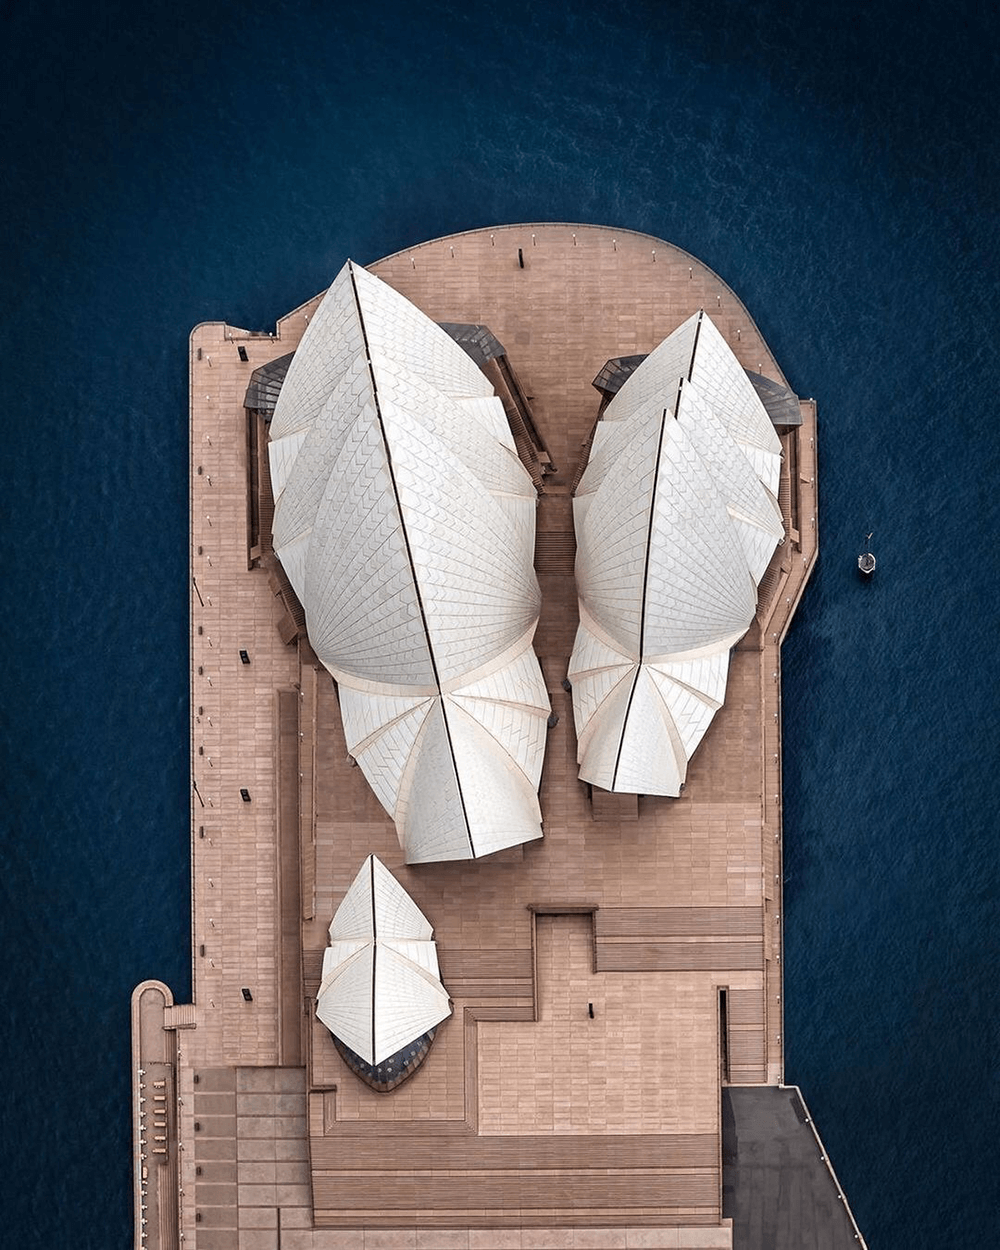 Image of Sydney Opera House by @photobernard